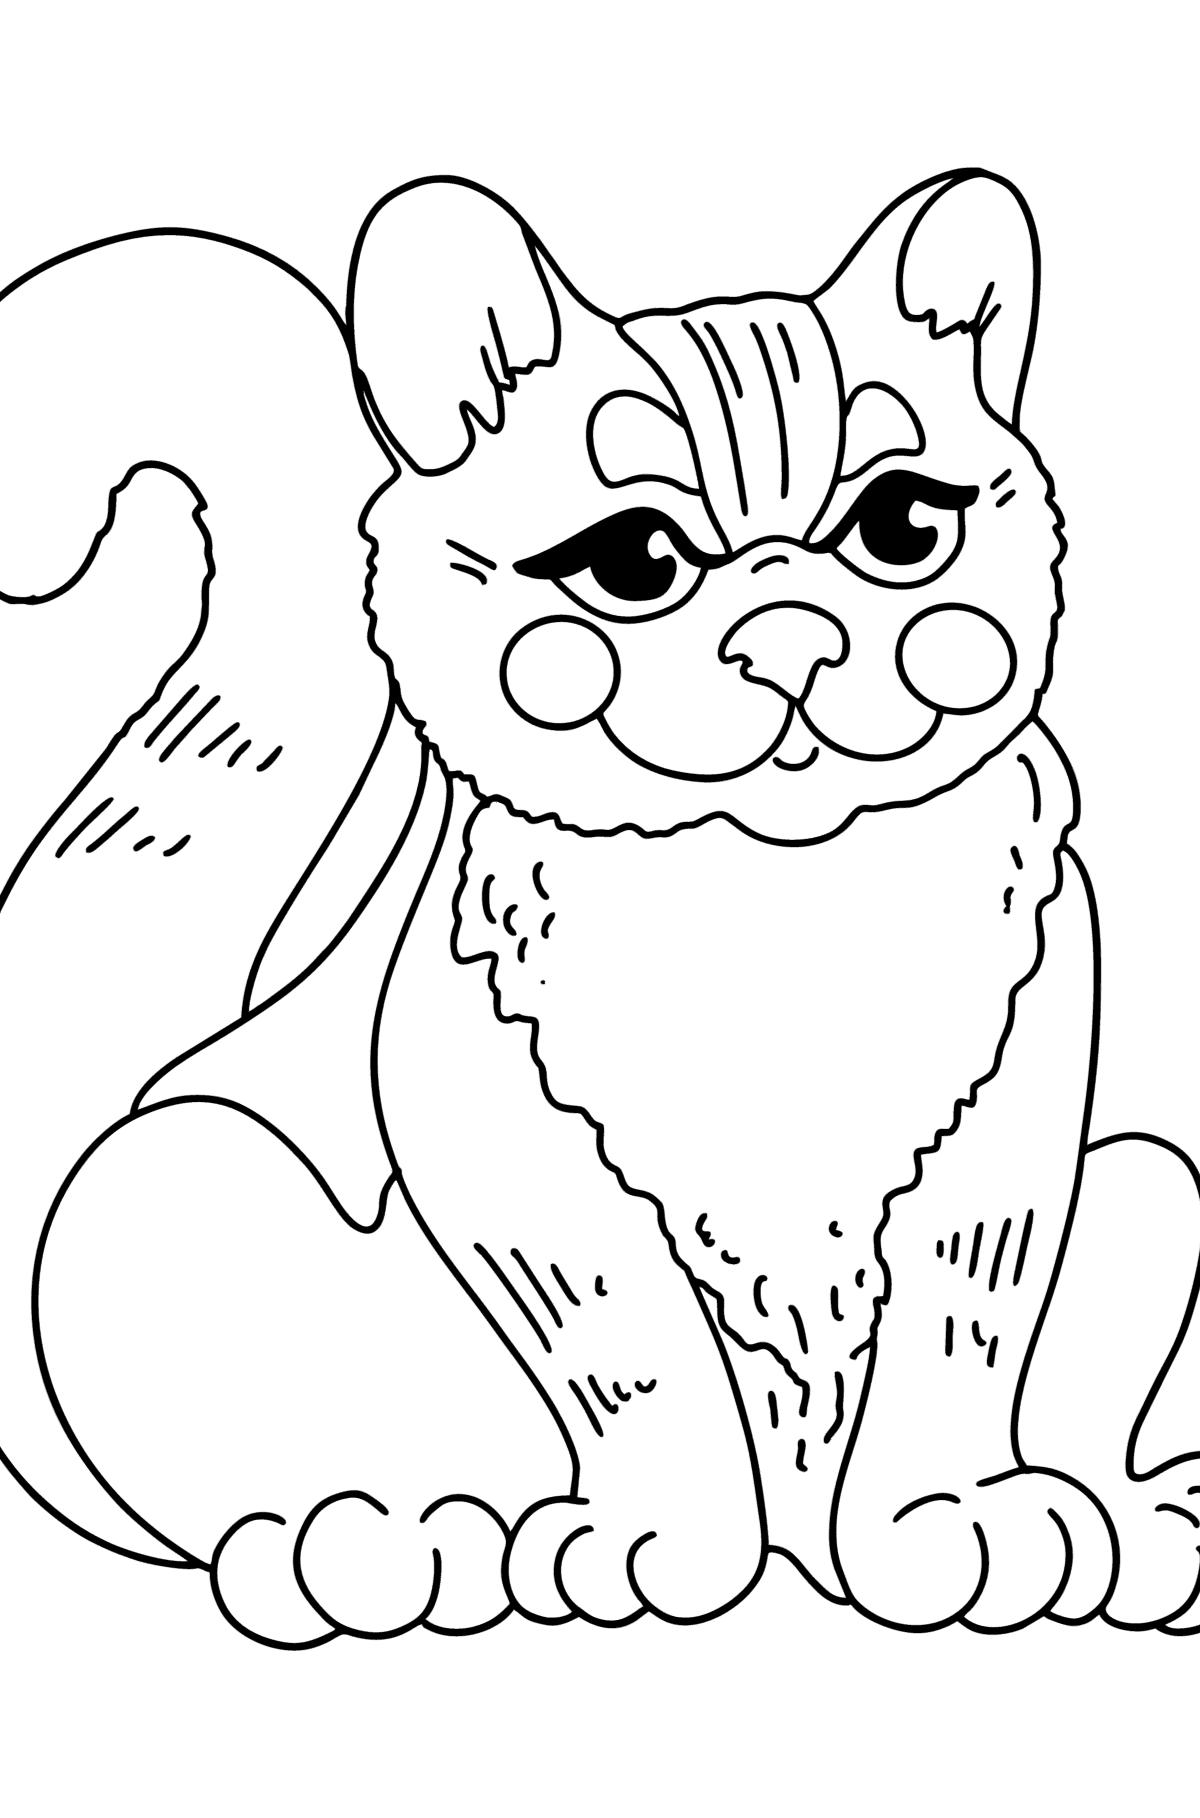 Tegning til fargelegging tegneserie kattunge - Tegninger til fargelegging for barn